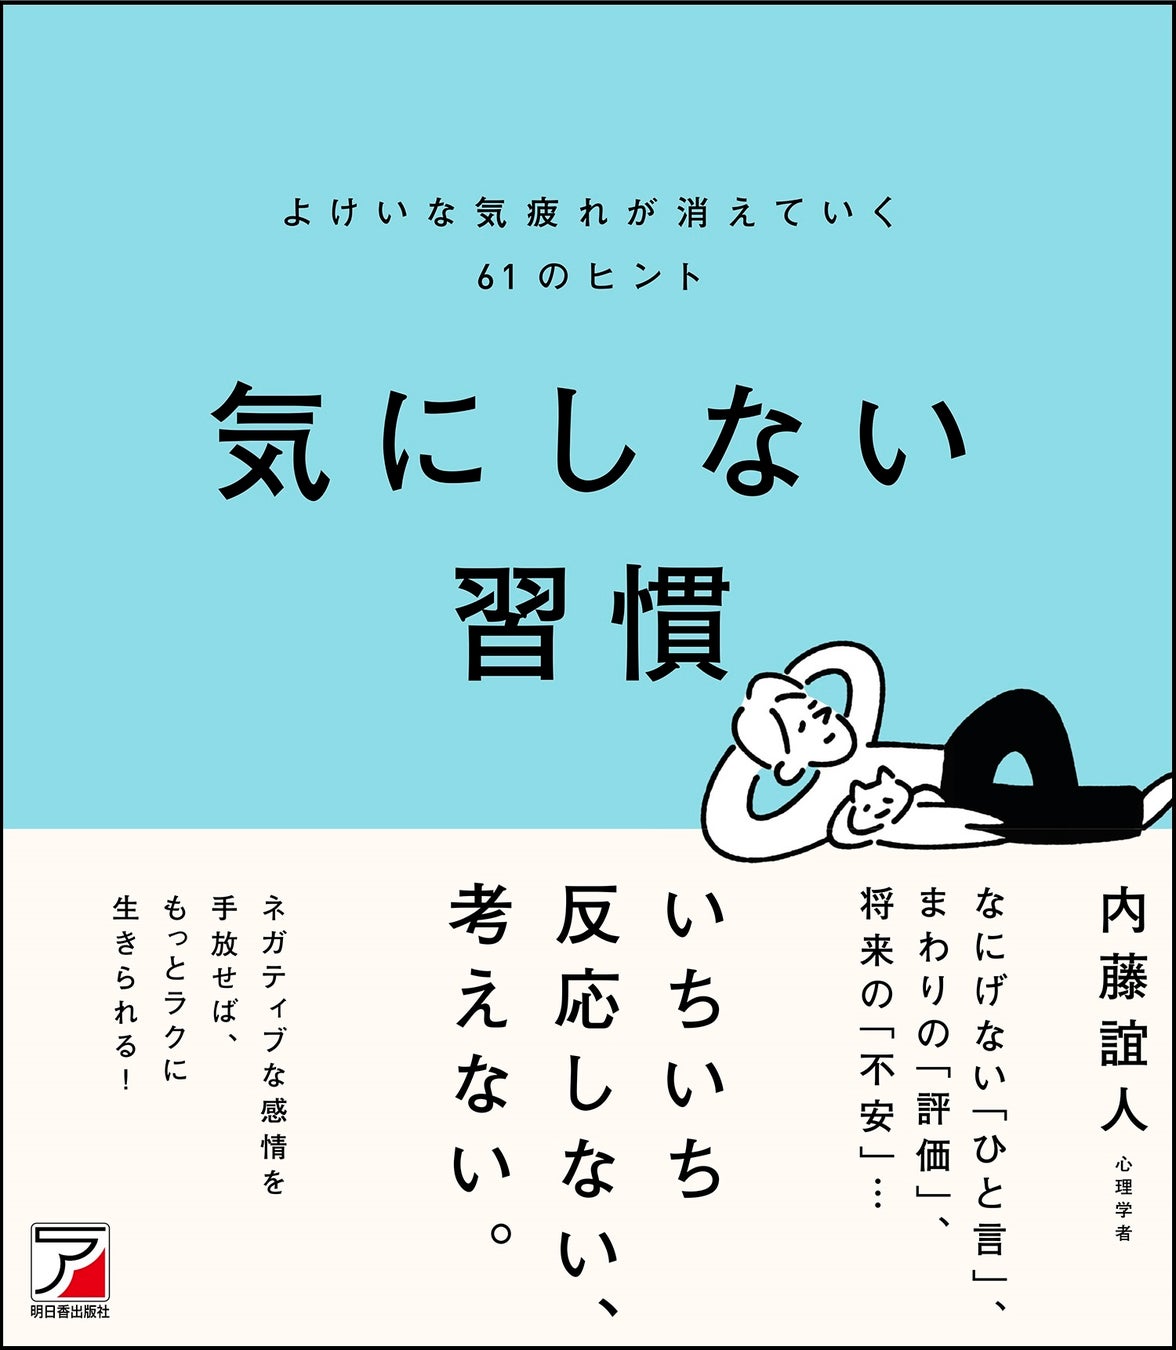 【日本初の独自配合】40代・50代男性の乾燥肌悩みにこれ1つで5つのトータルケア。『BARONY MIRROR ALL IN ONE GEL』を新発売